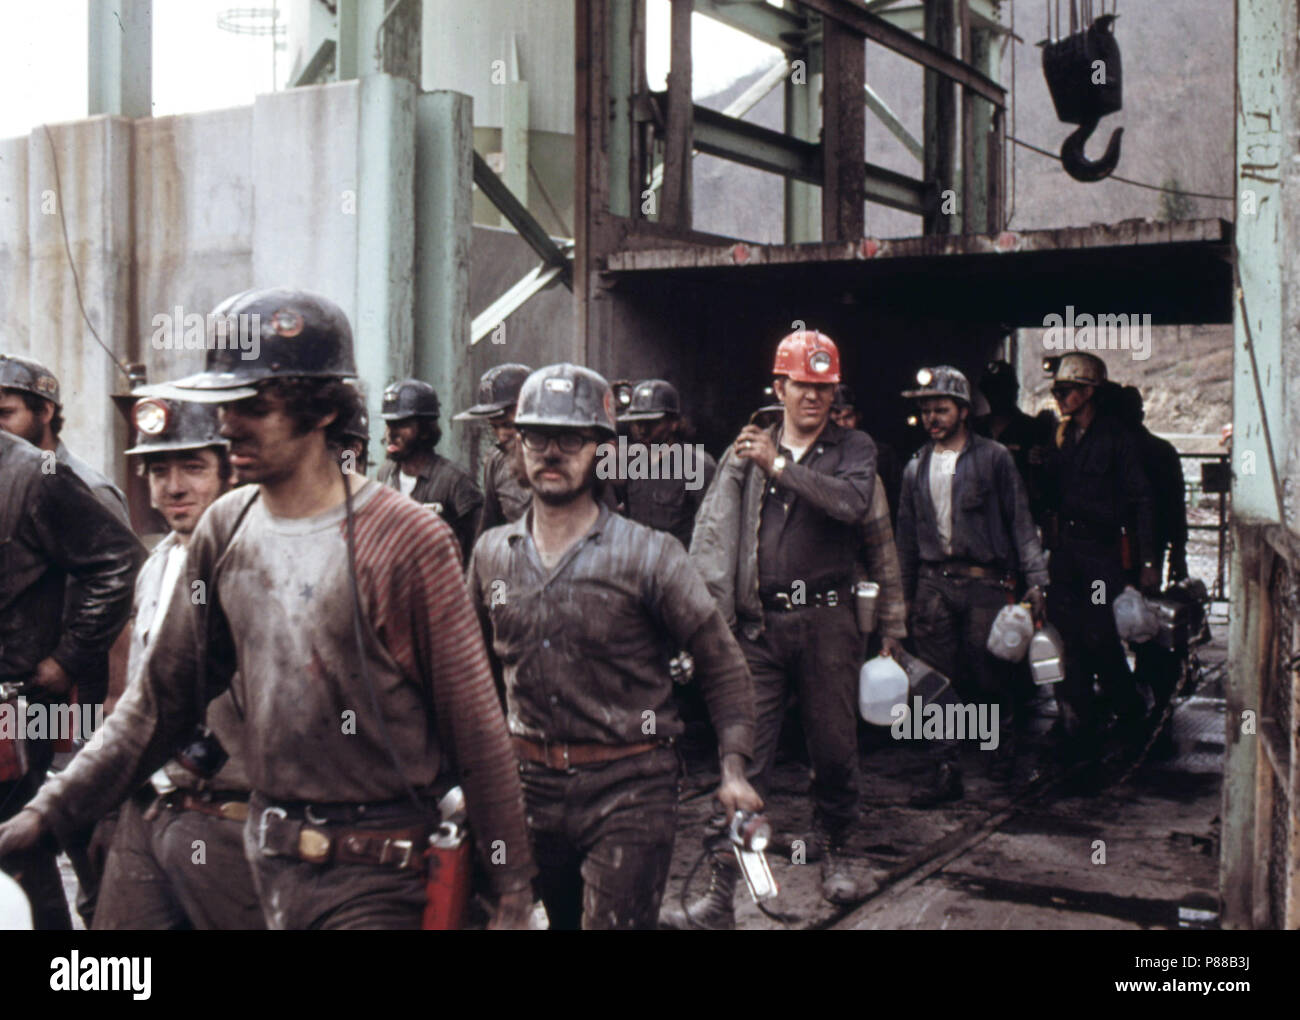 Premier quart de mineurs de la société Virginia-Pocahontas Mine de charbon # 4 près de Richlands, Virginie, laissant l'Ascenseur Avril 1974 Banque D'Images